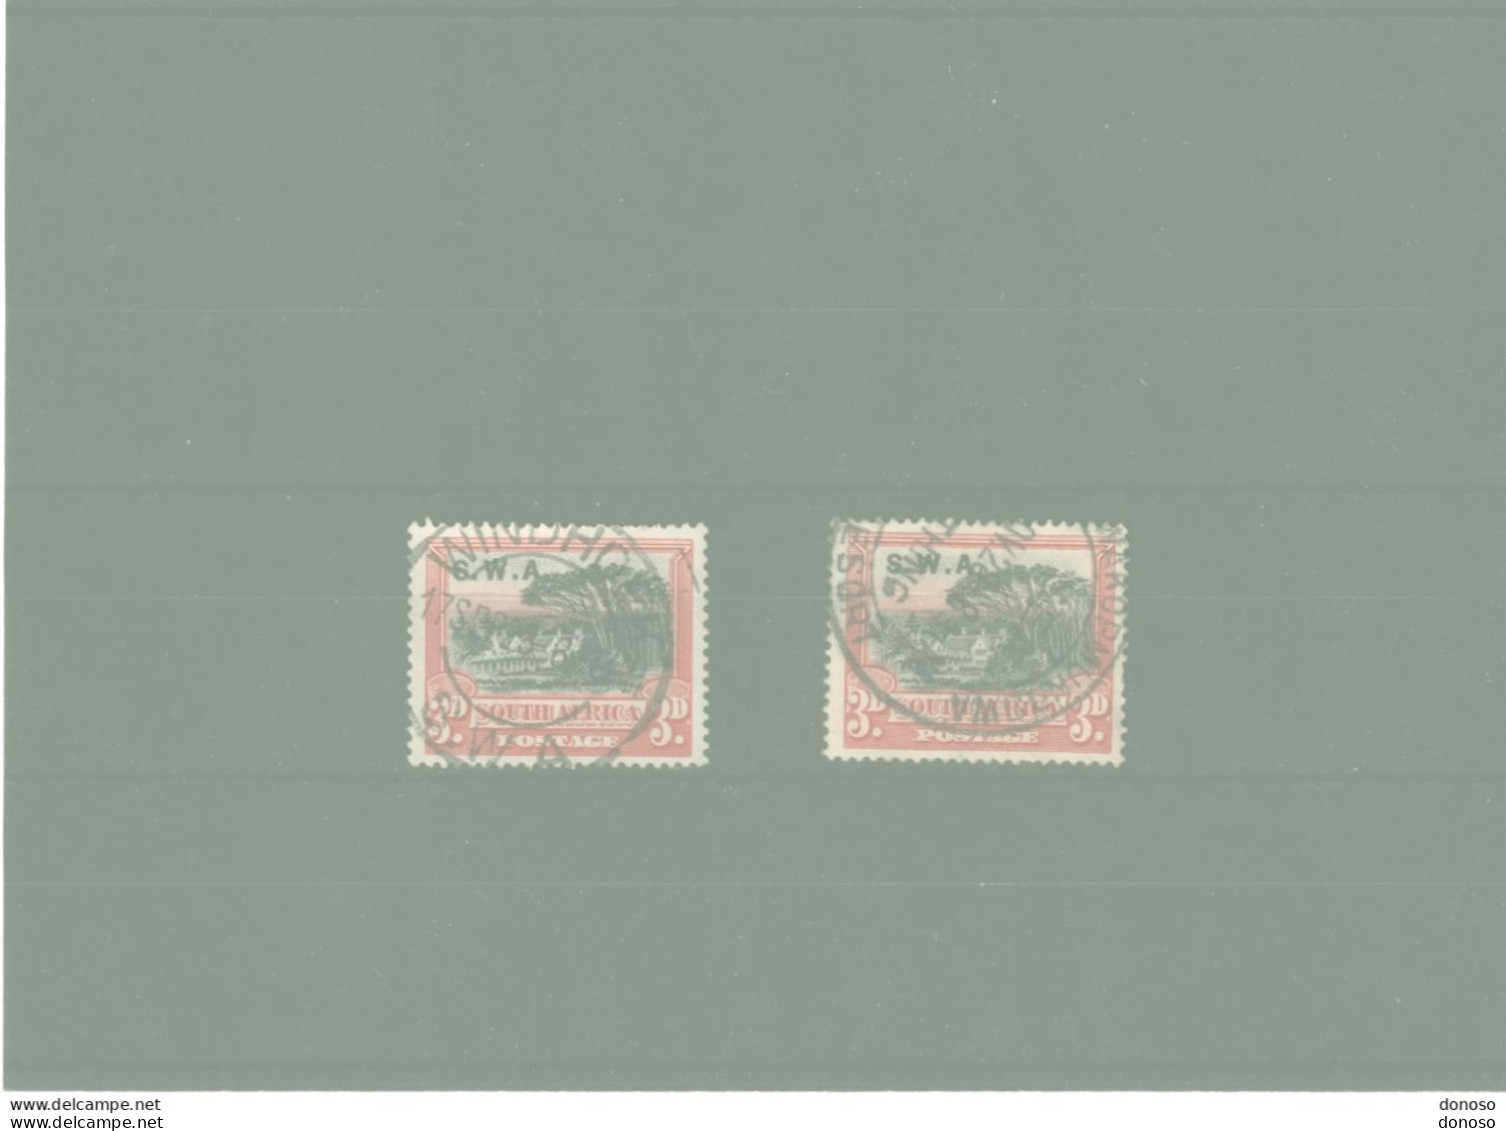 SWA SUD OUEST AFRICAIN 1927 Yvert  87 + 96 Oblitéré, Cote 4 Euros - Afrique Du Sud-Ouest (1923-1990)